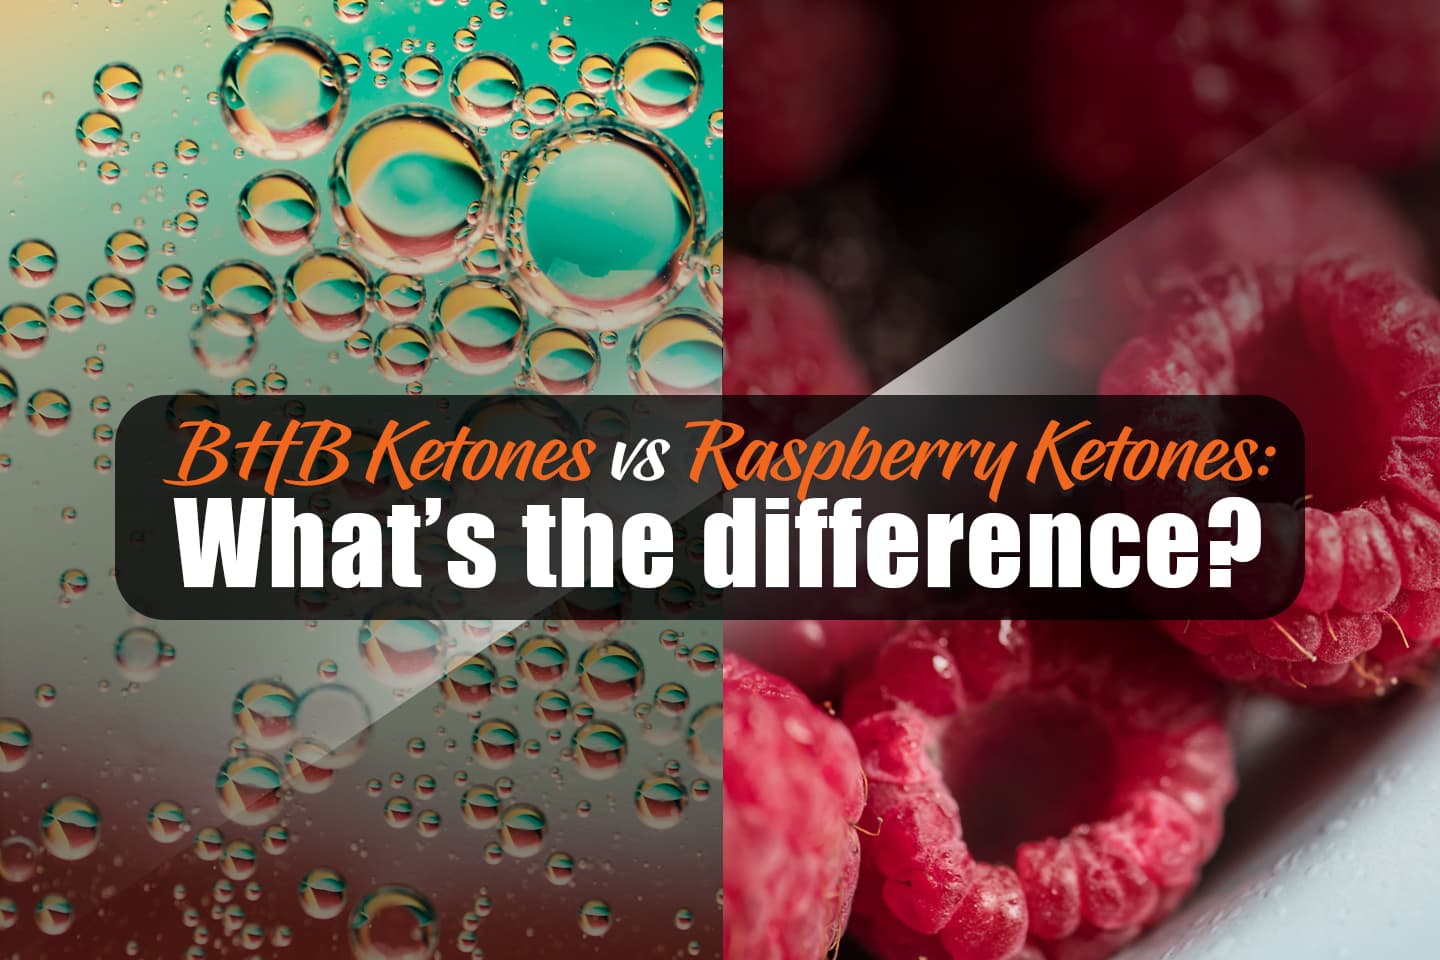 BHB Ketones vs Raspberry Ketones